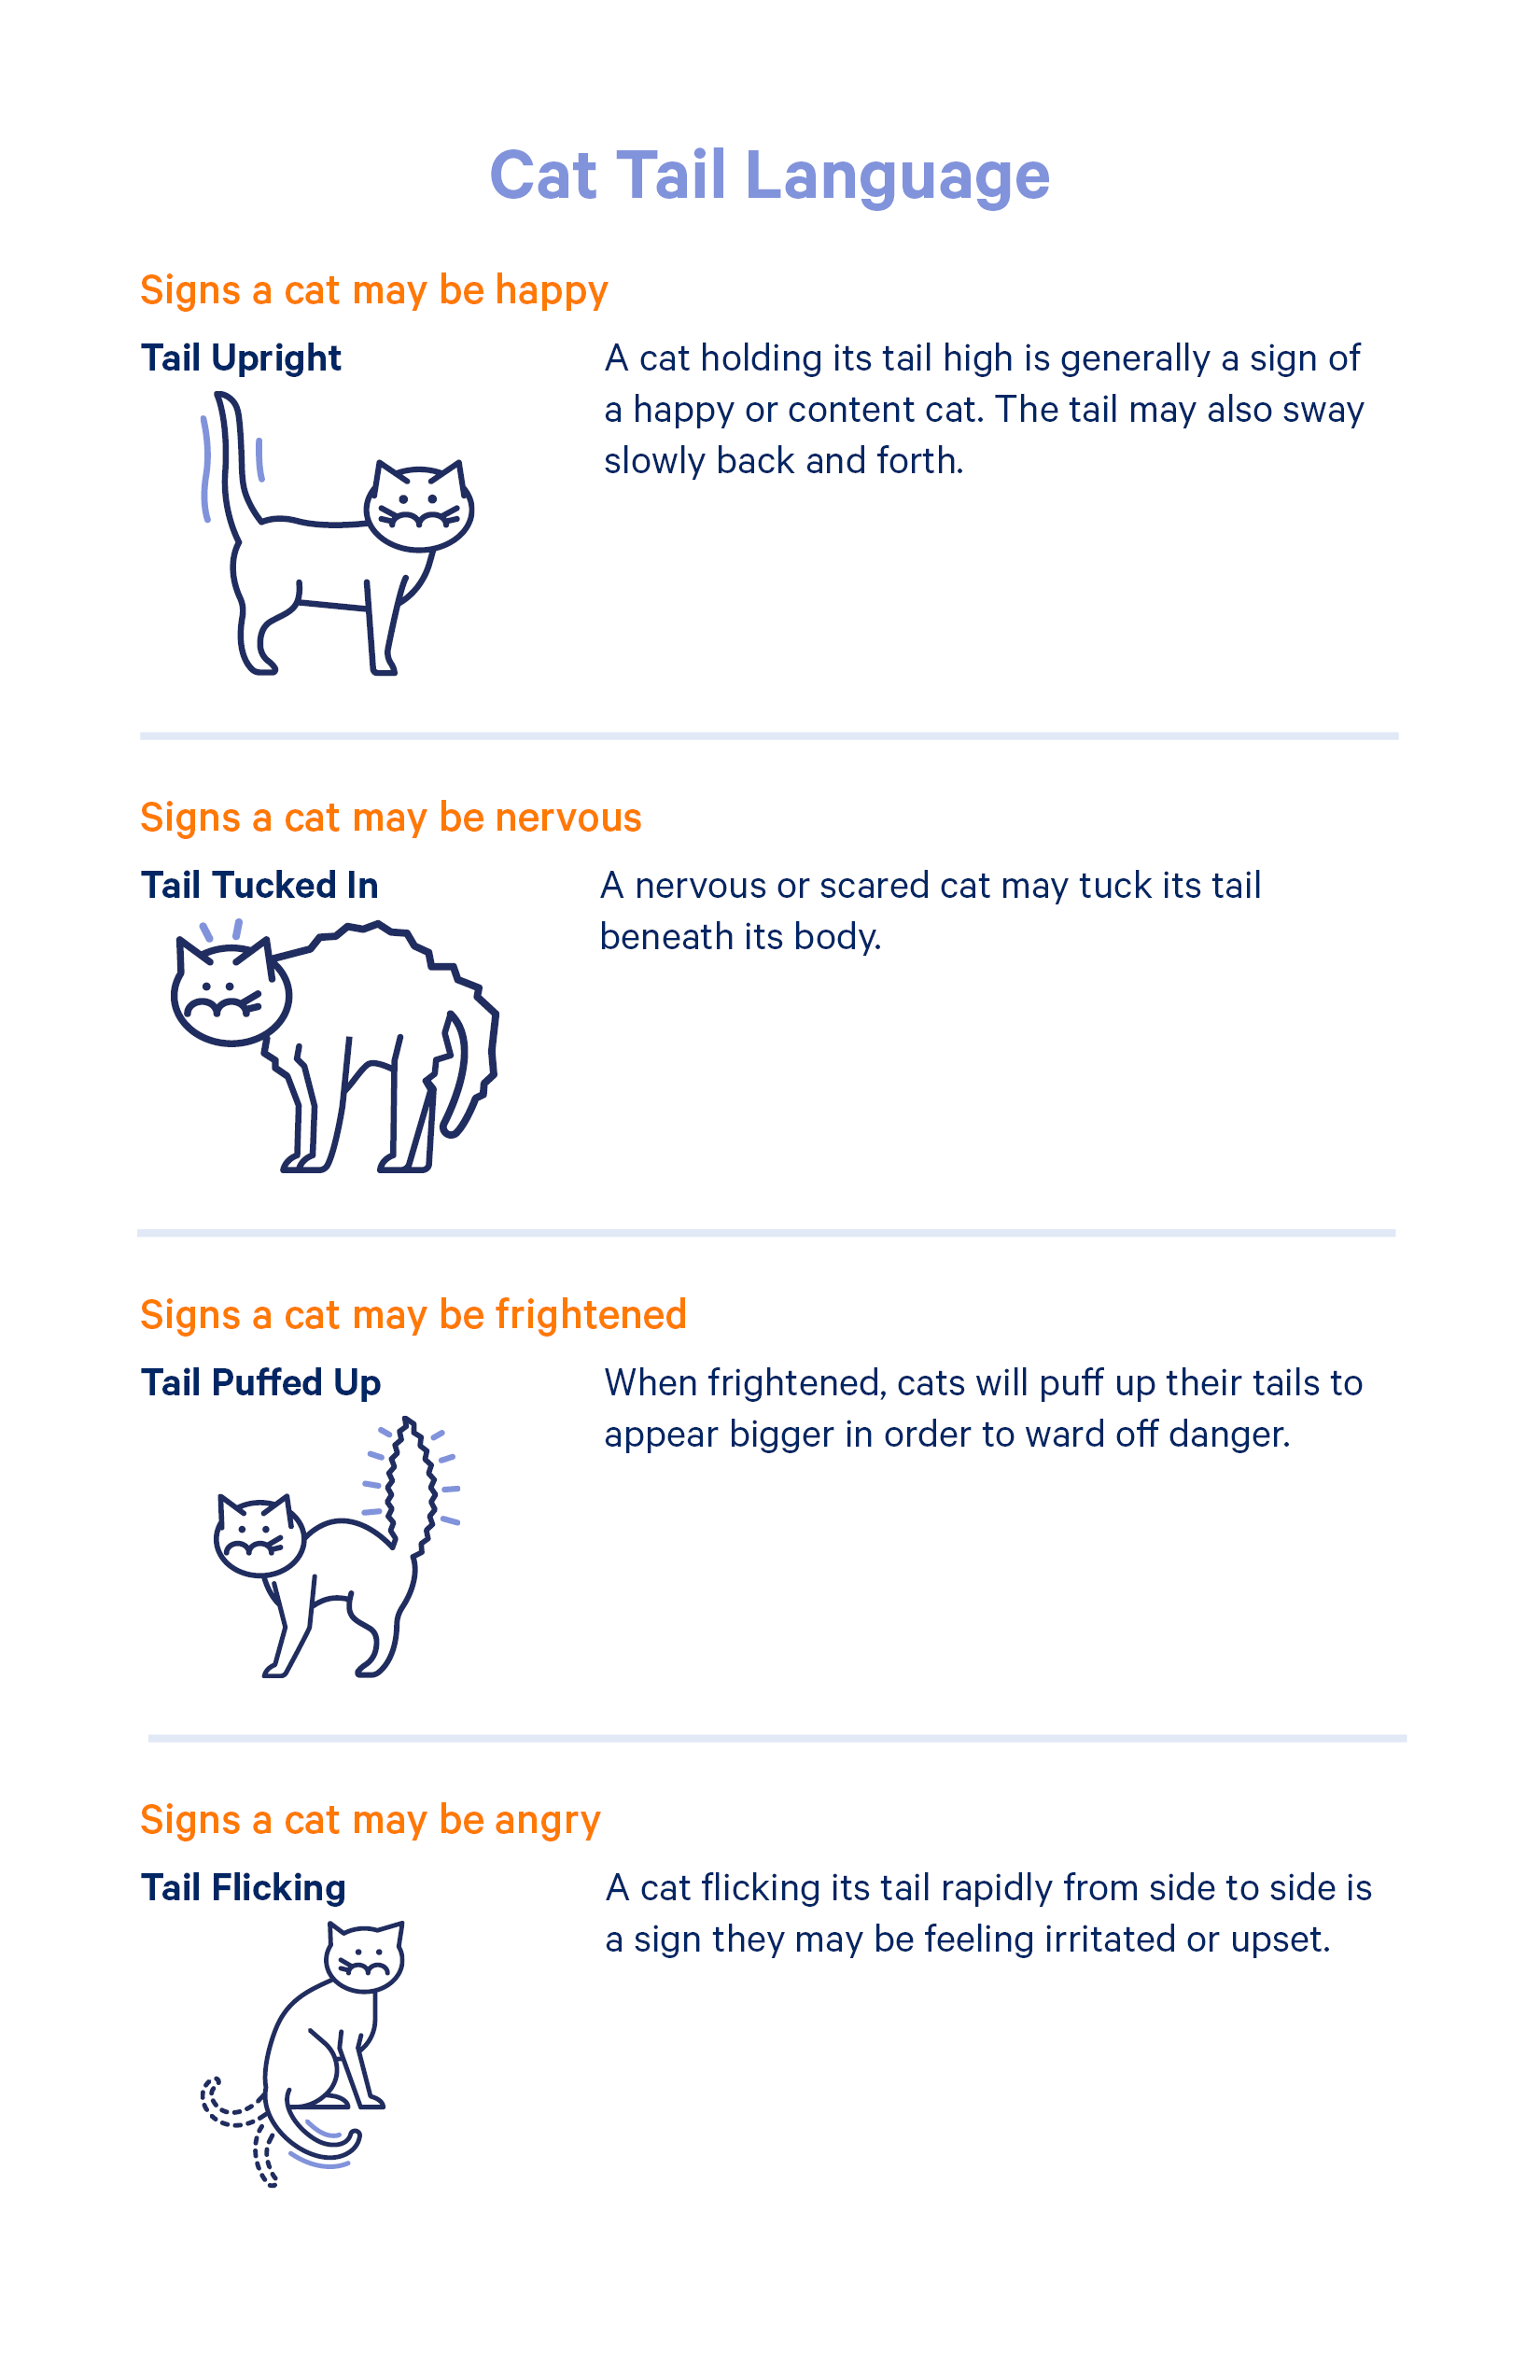 Cat tail language